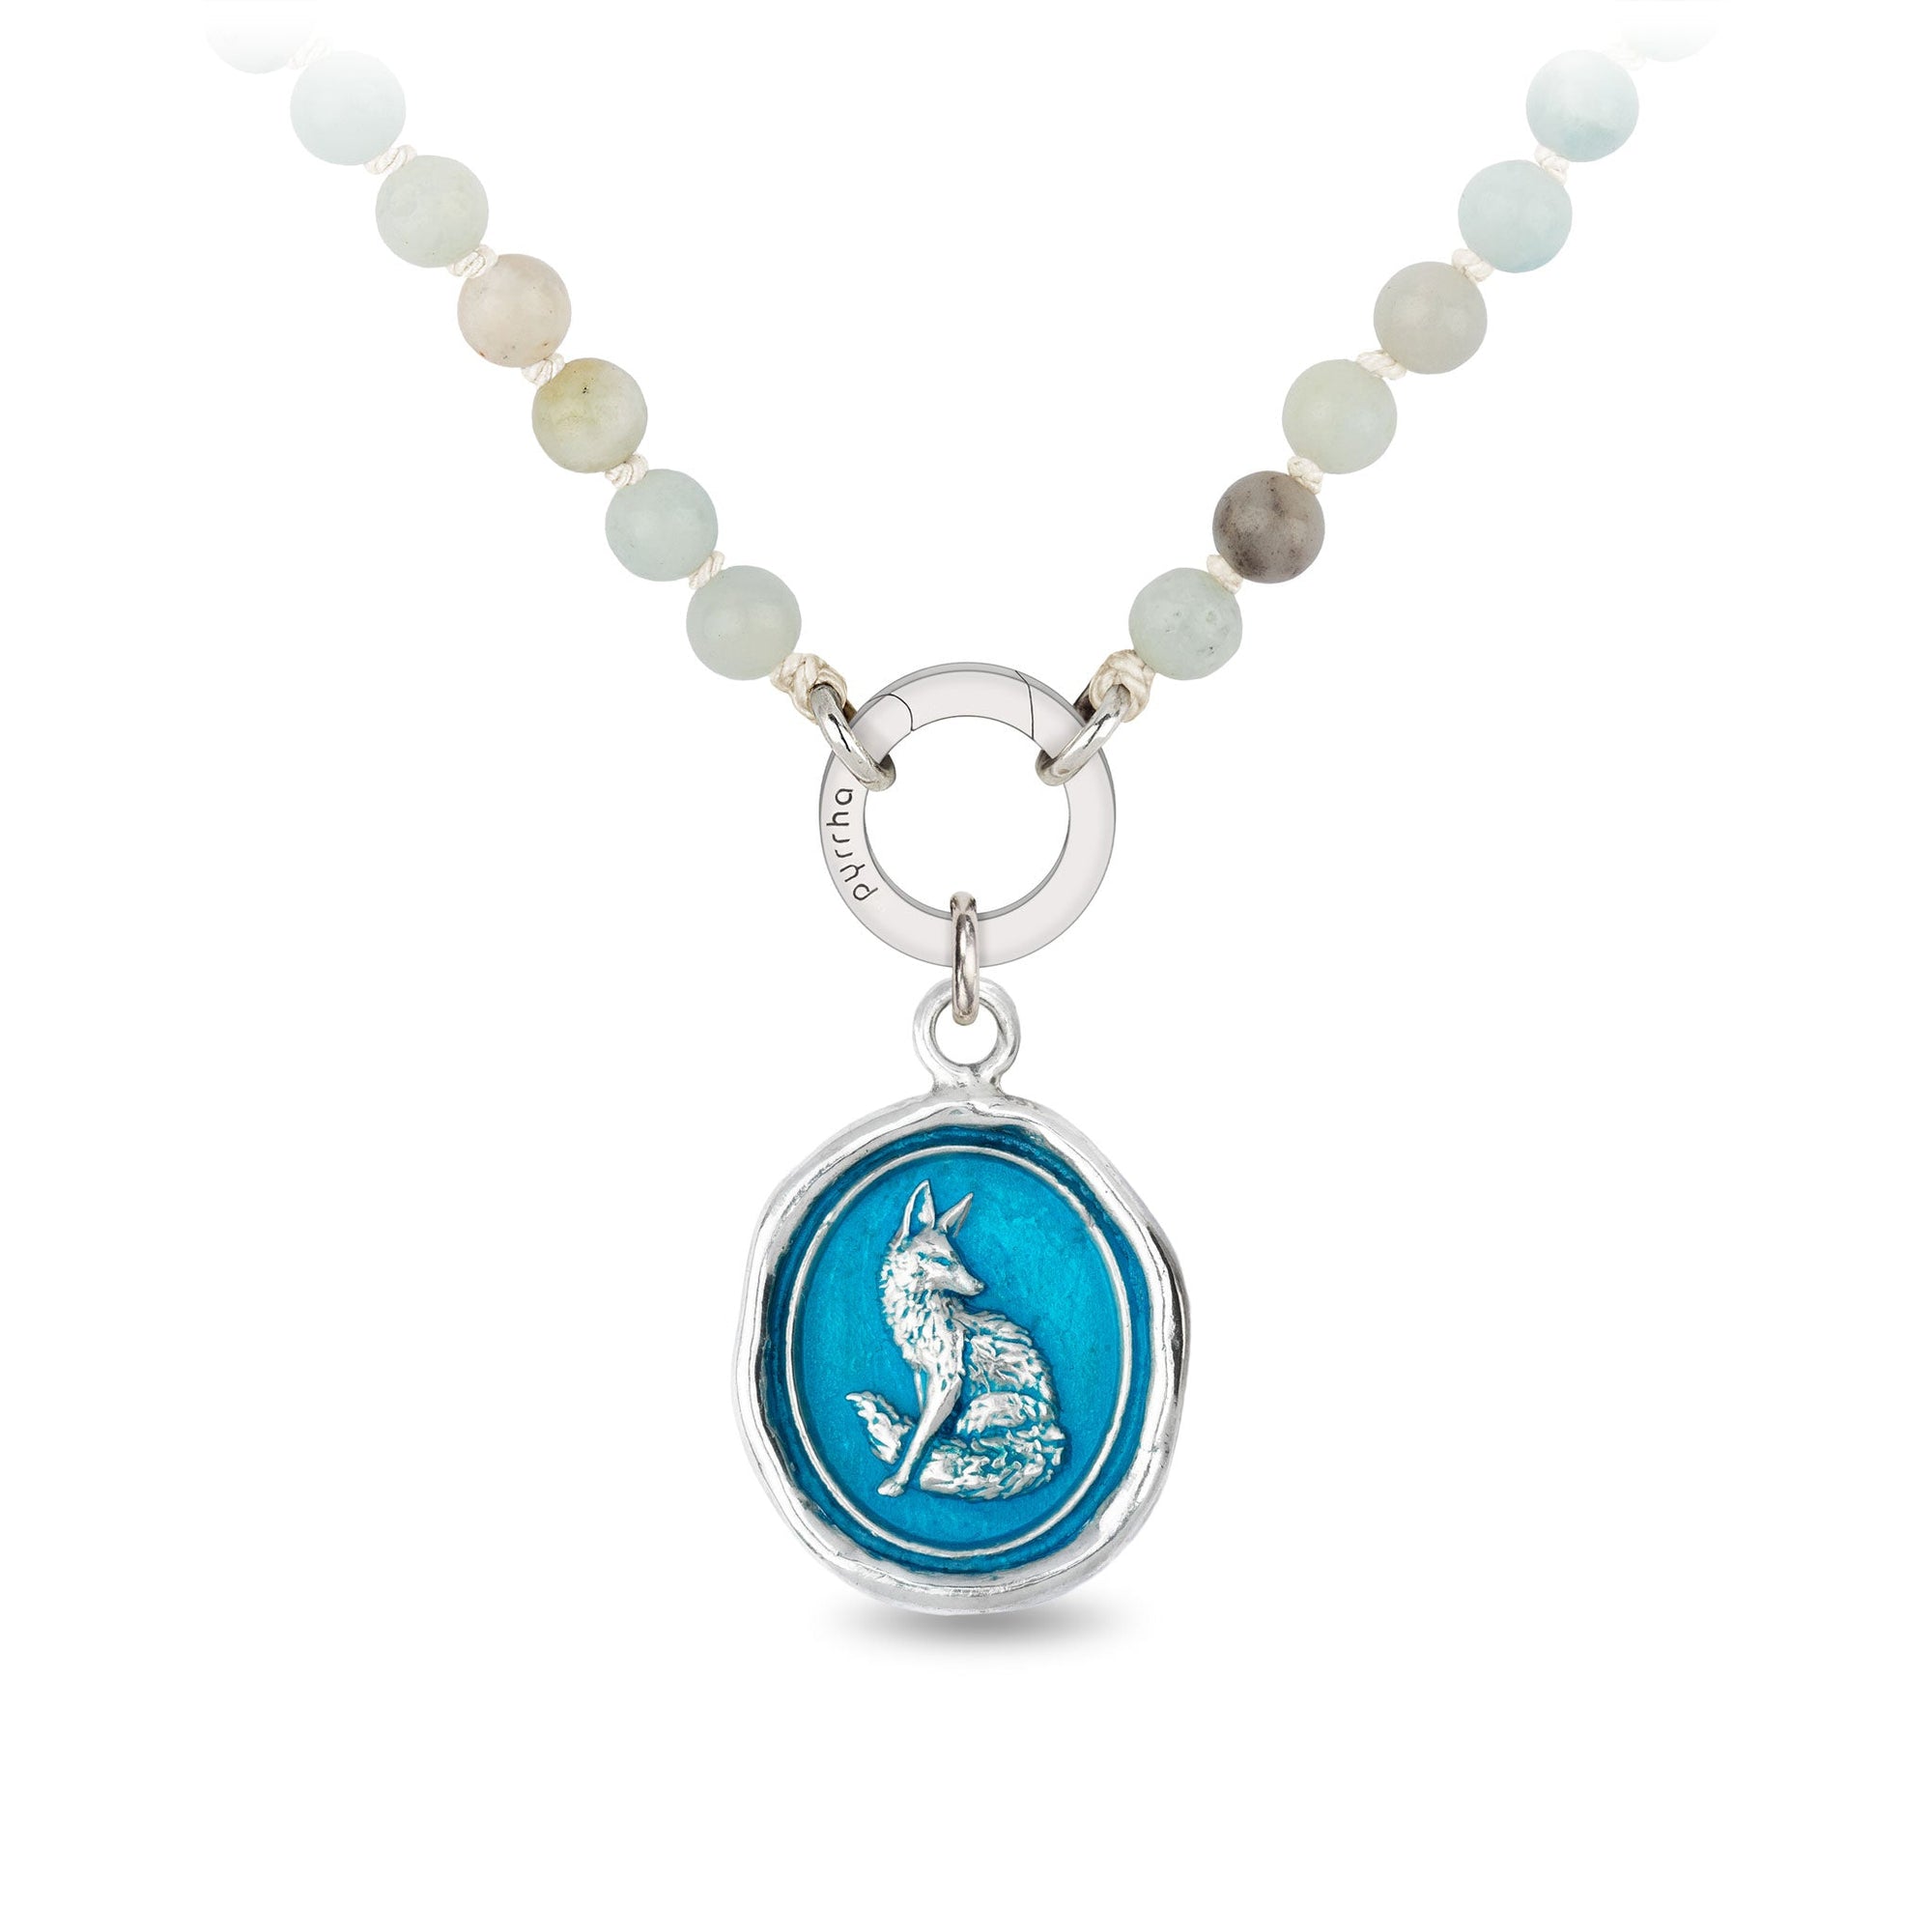 Trust in Yourself Sautoir Necklace - Capri Blue